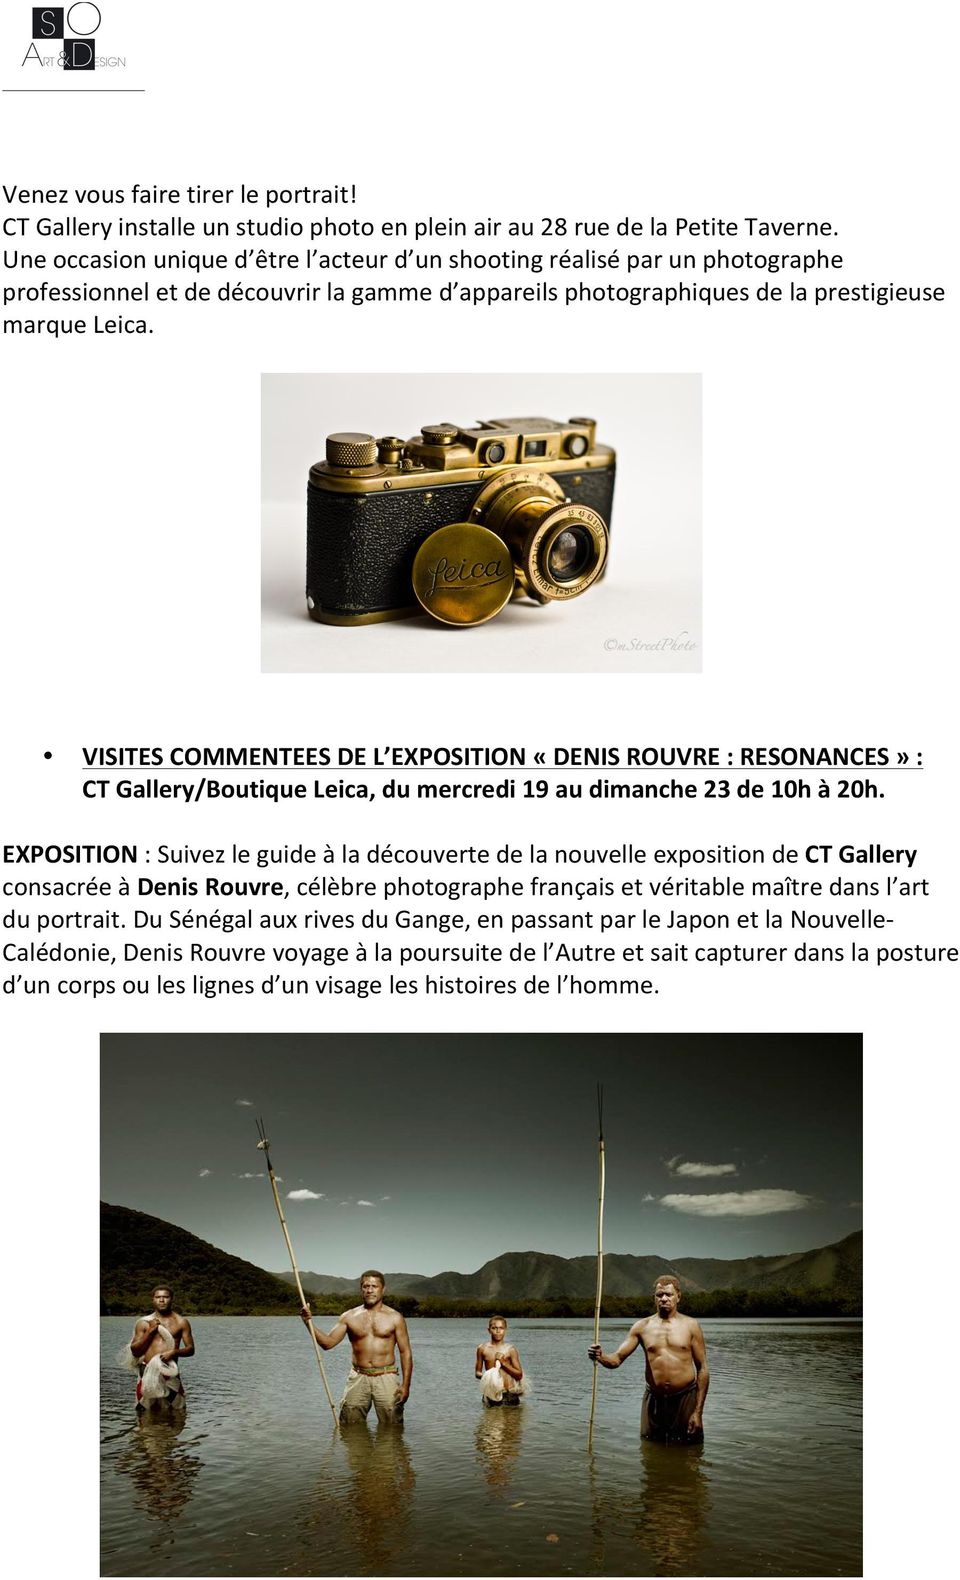 VISITES COMMENTEES DE L EXPOSITION «DENIS ROUVRE : RESONANCES» : CT Gallery/Boutique Leica, du mercredi 19 au dimanche 23 de 10h à 20h.